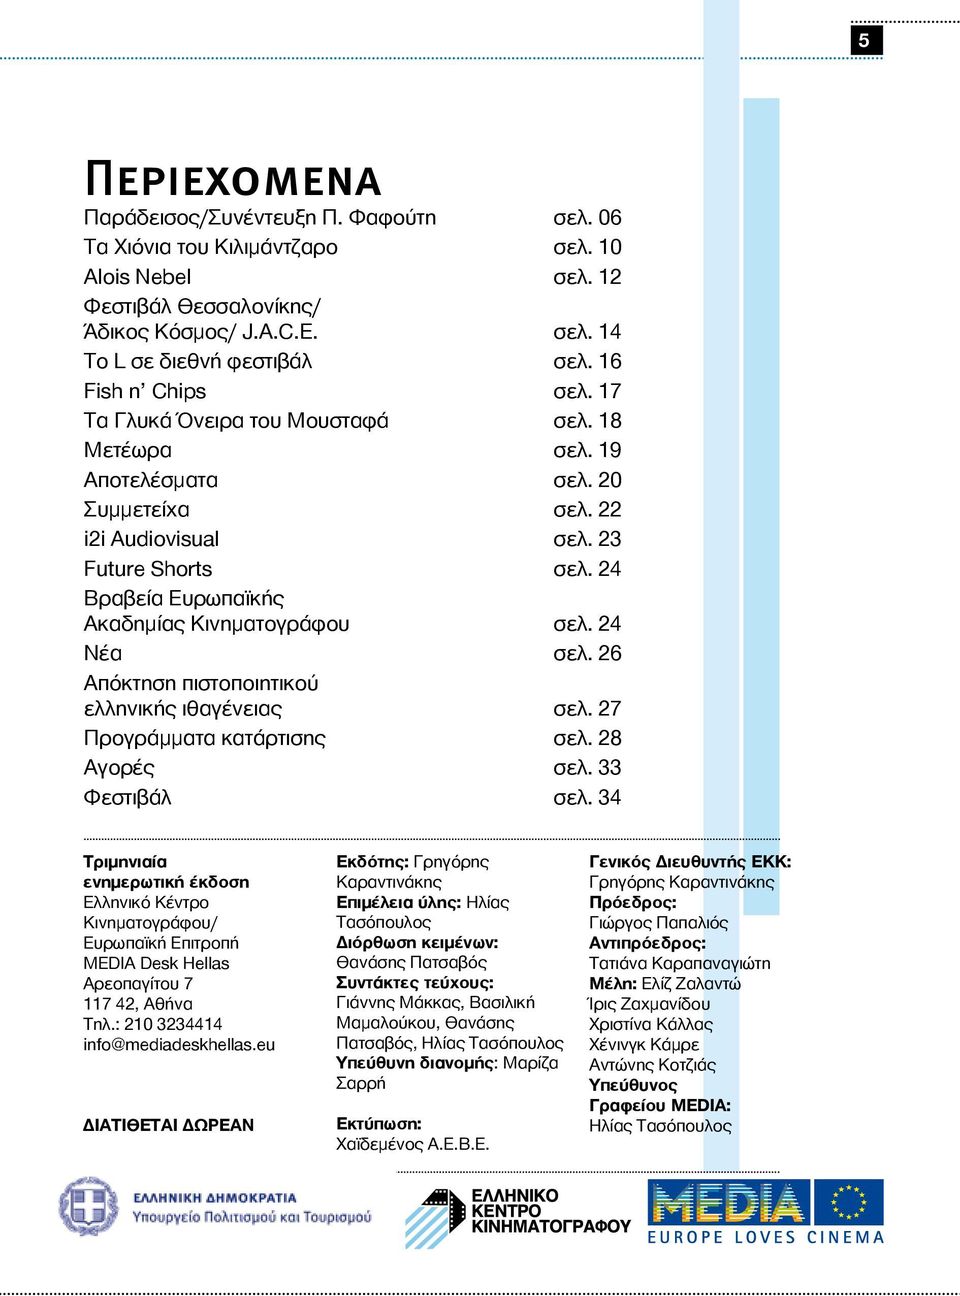 24 Βραβεία Ευρωπαϊκής Ακαδημίας Κινηματογράφου σελ. 24 Νέα σελ. 26 Απόκτηση πιστοποιητικού ελληνικής ιθαγένειας σελ. 27 Προγράμματα κατάρτισης σελ. 28 Αγορές σελ. 33 Φεστιβάλ σελ.